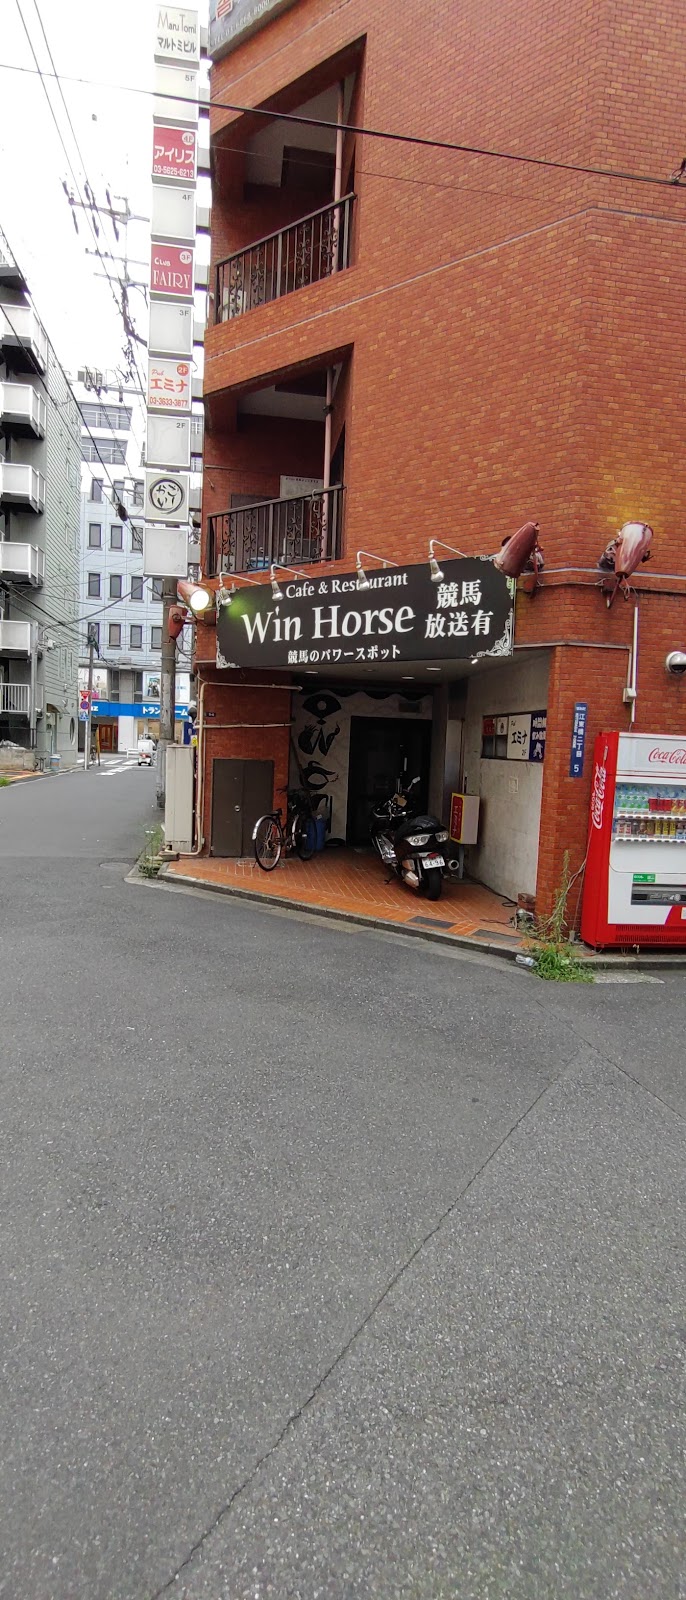 Win Horseの風景